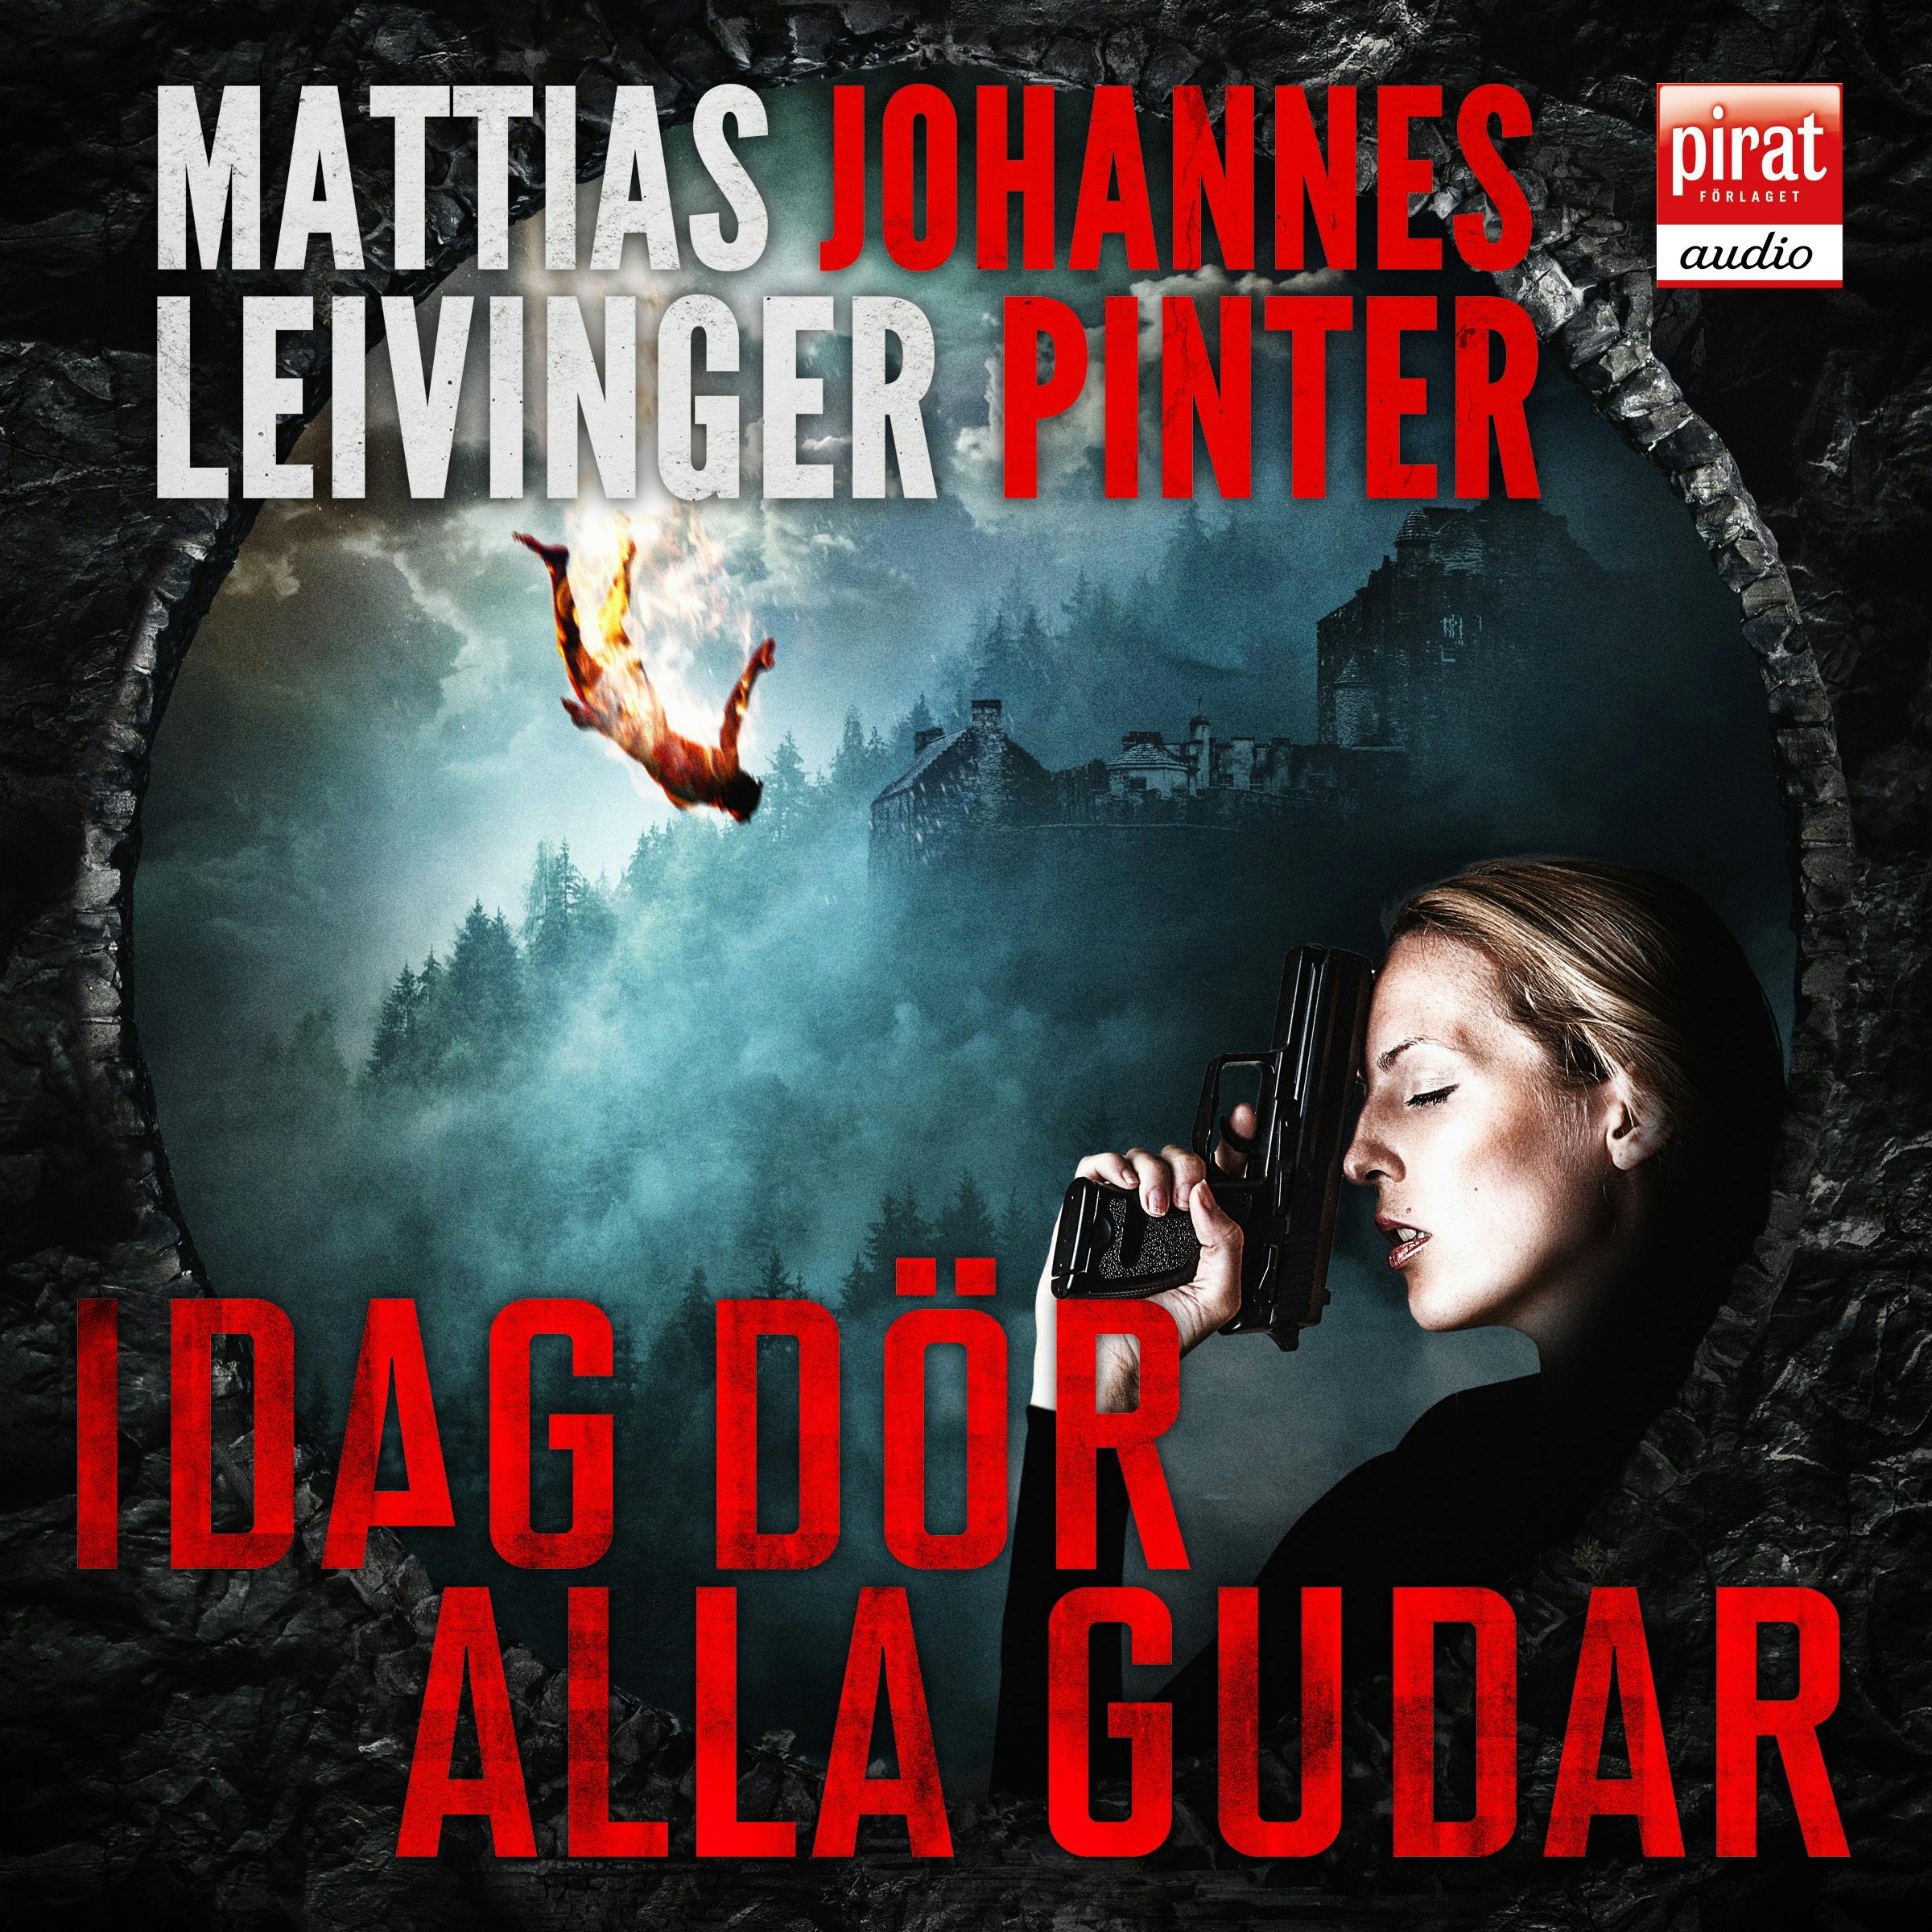 Idag dör alla gudar - Johannes Pinter, Mattias Leivinger